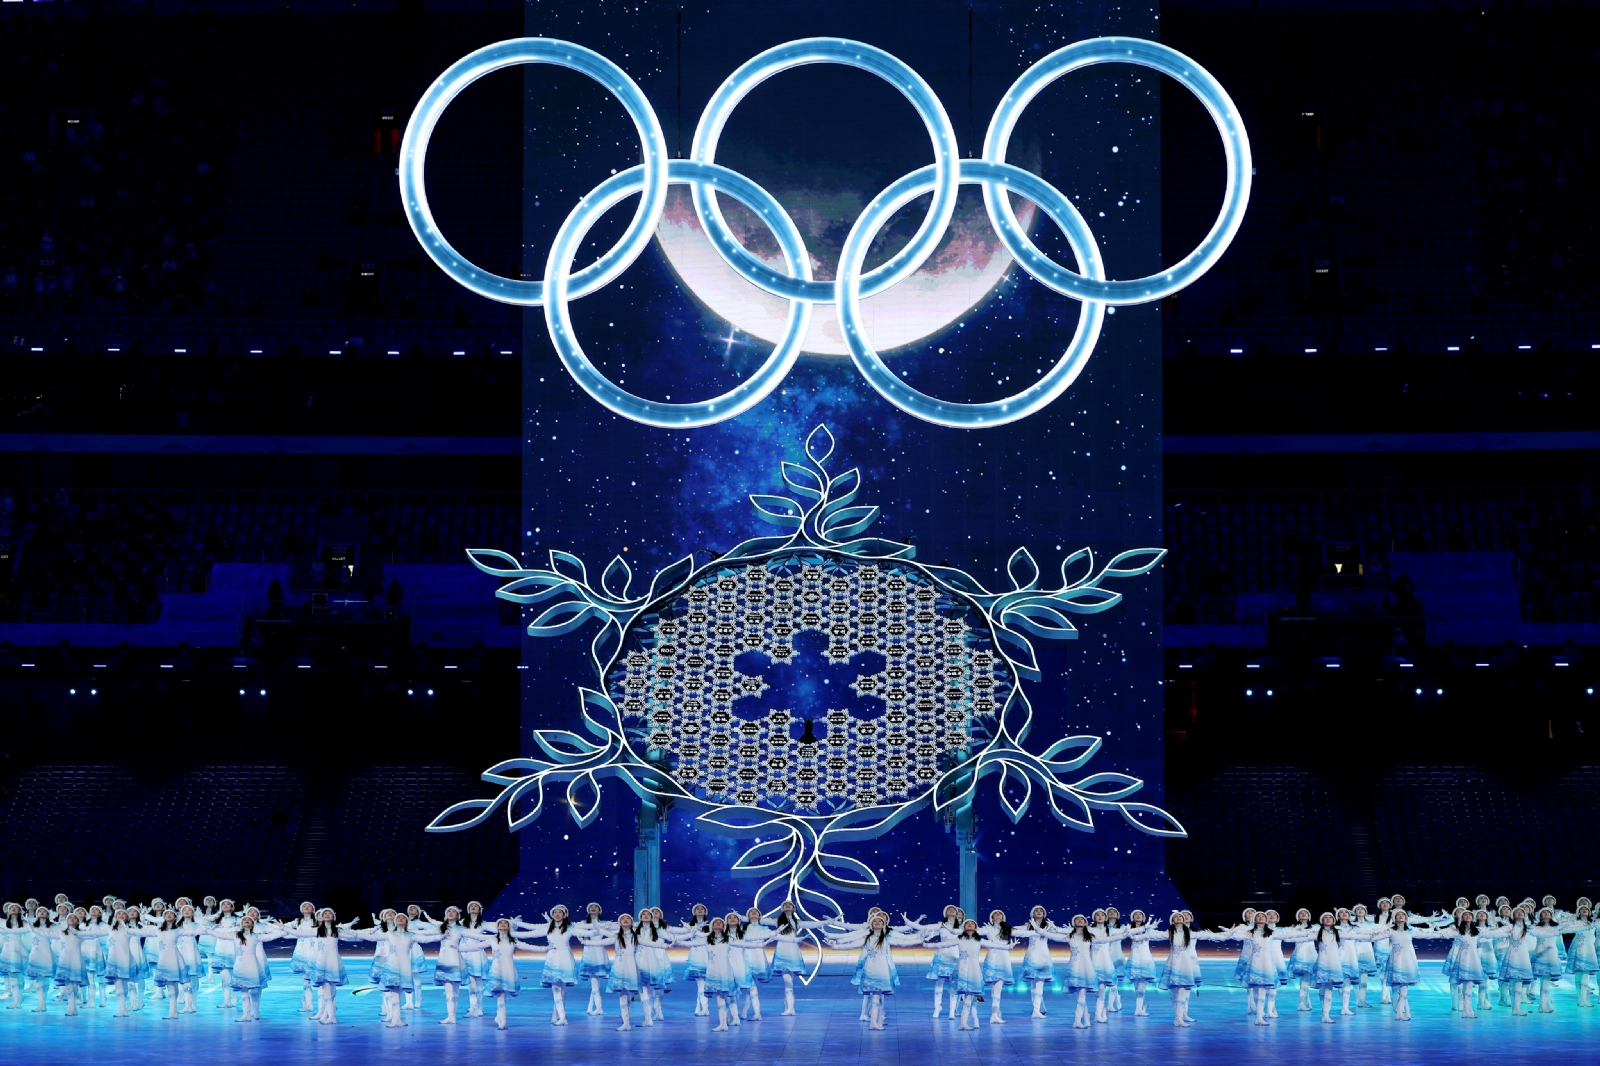 Este 4 de febrero el telón se abre para presentar la vigesimocuarta edición de los Juegos Olímpicos de Invierno